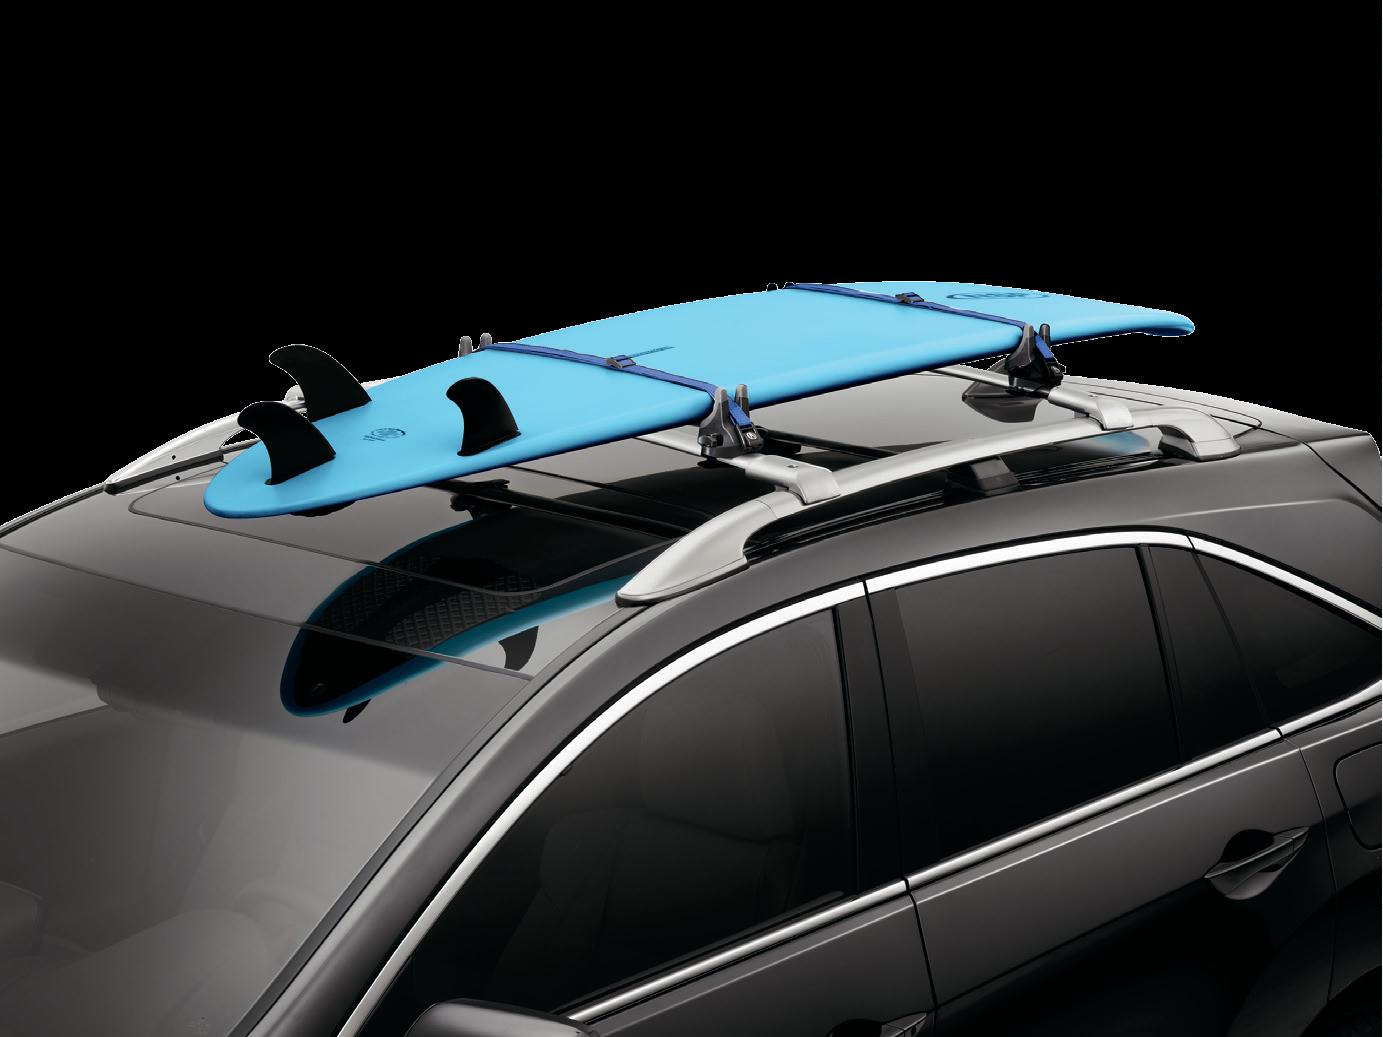 2016 Acura RDX Surfboard Attachment 08L05-TA1-200